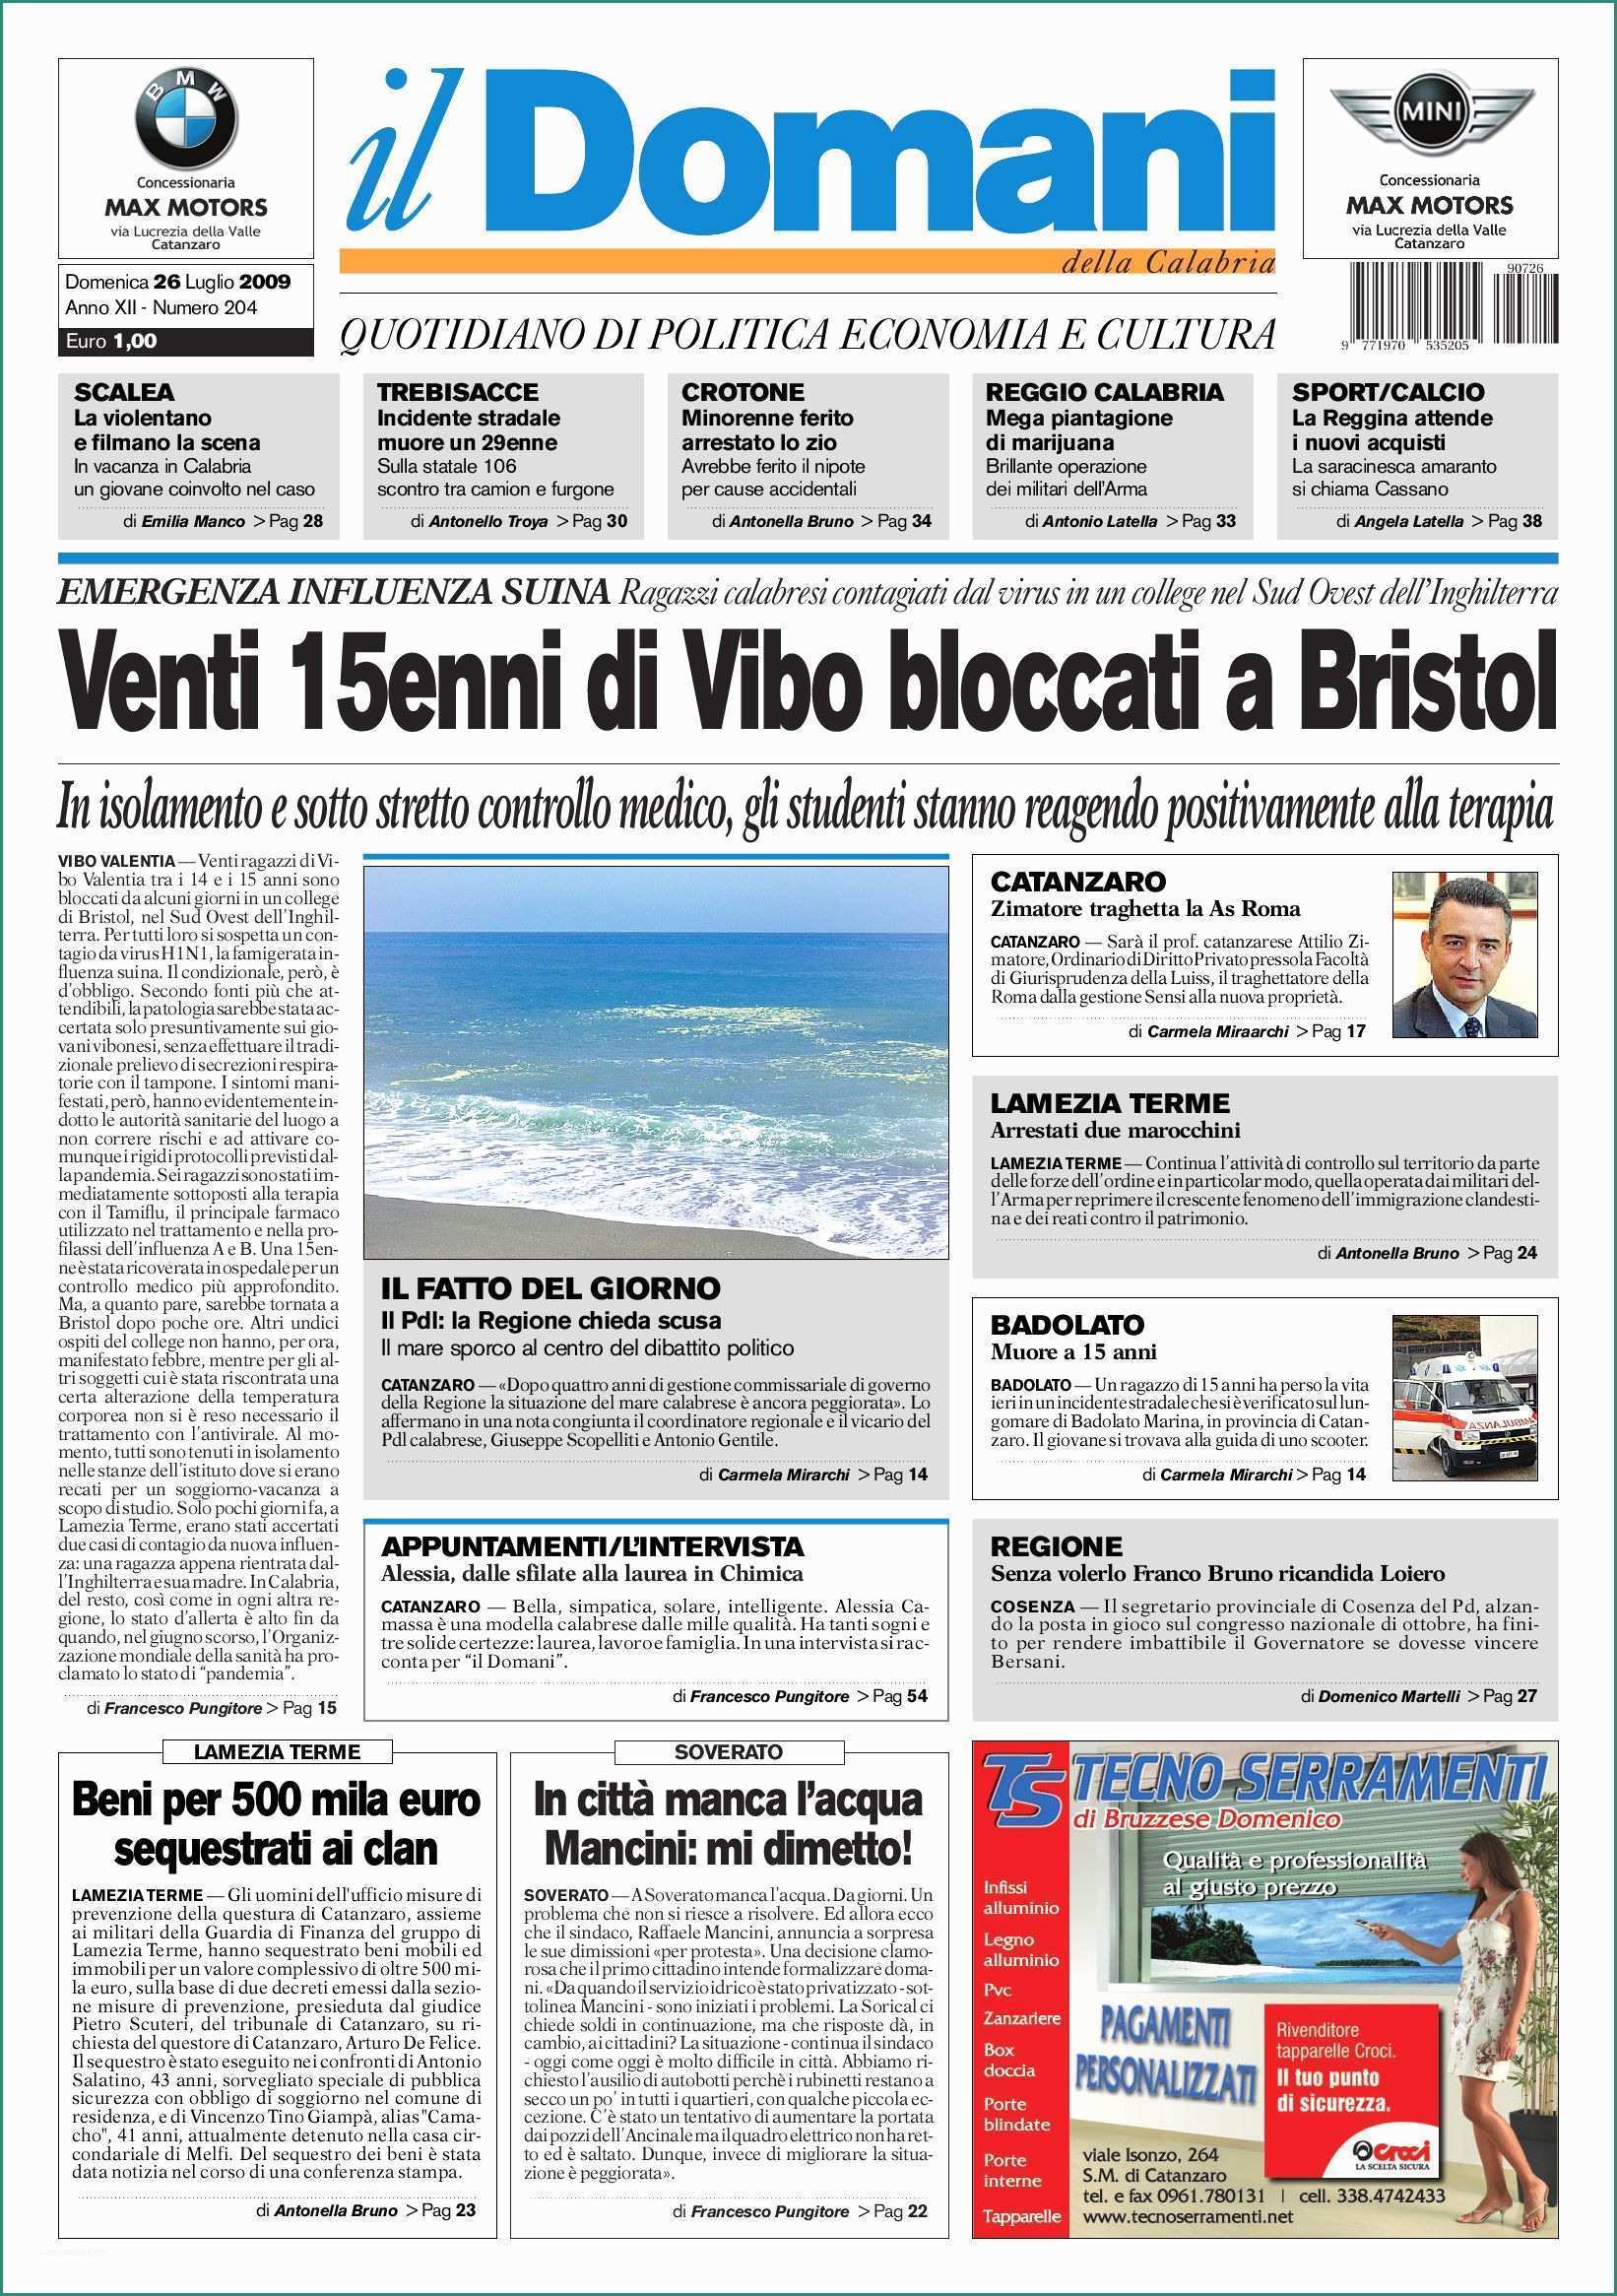 Acqua Blues Residuo Fisso E Ildomani by T&p Editori Il Domani issuu